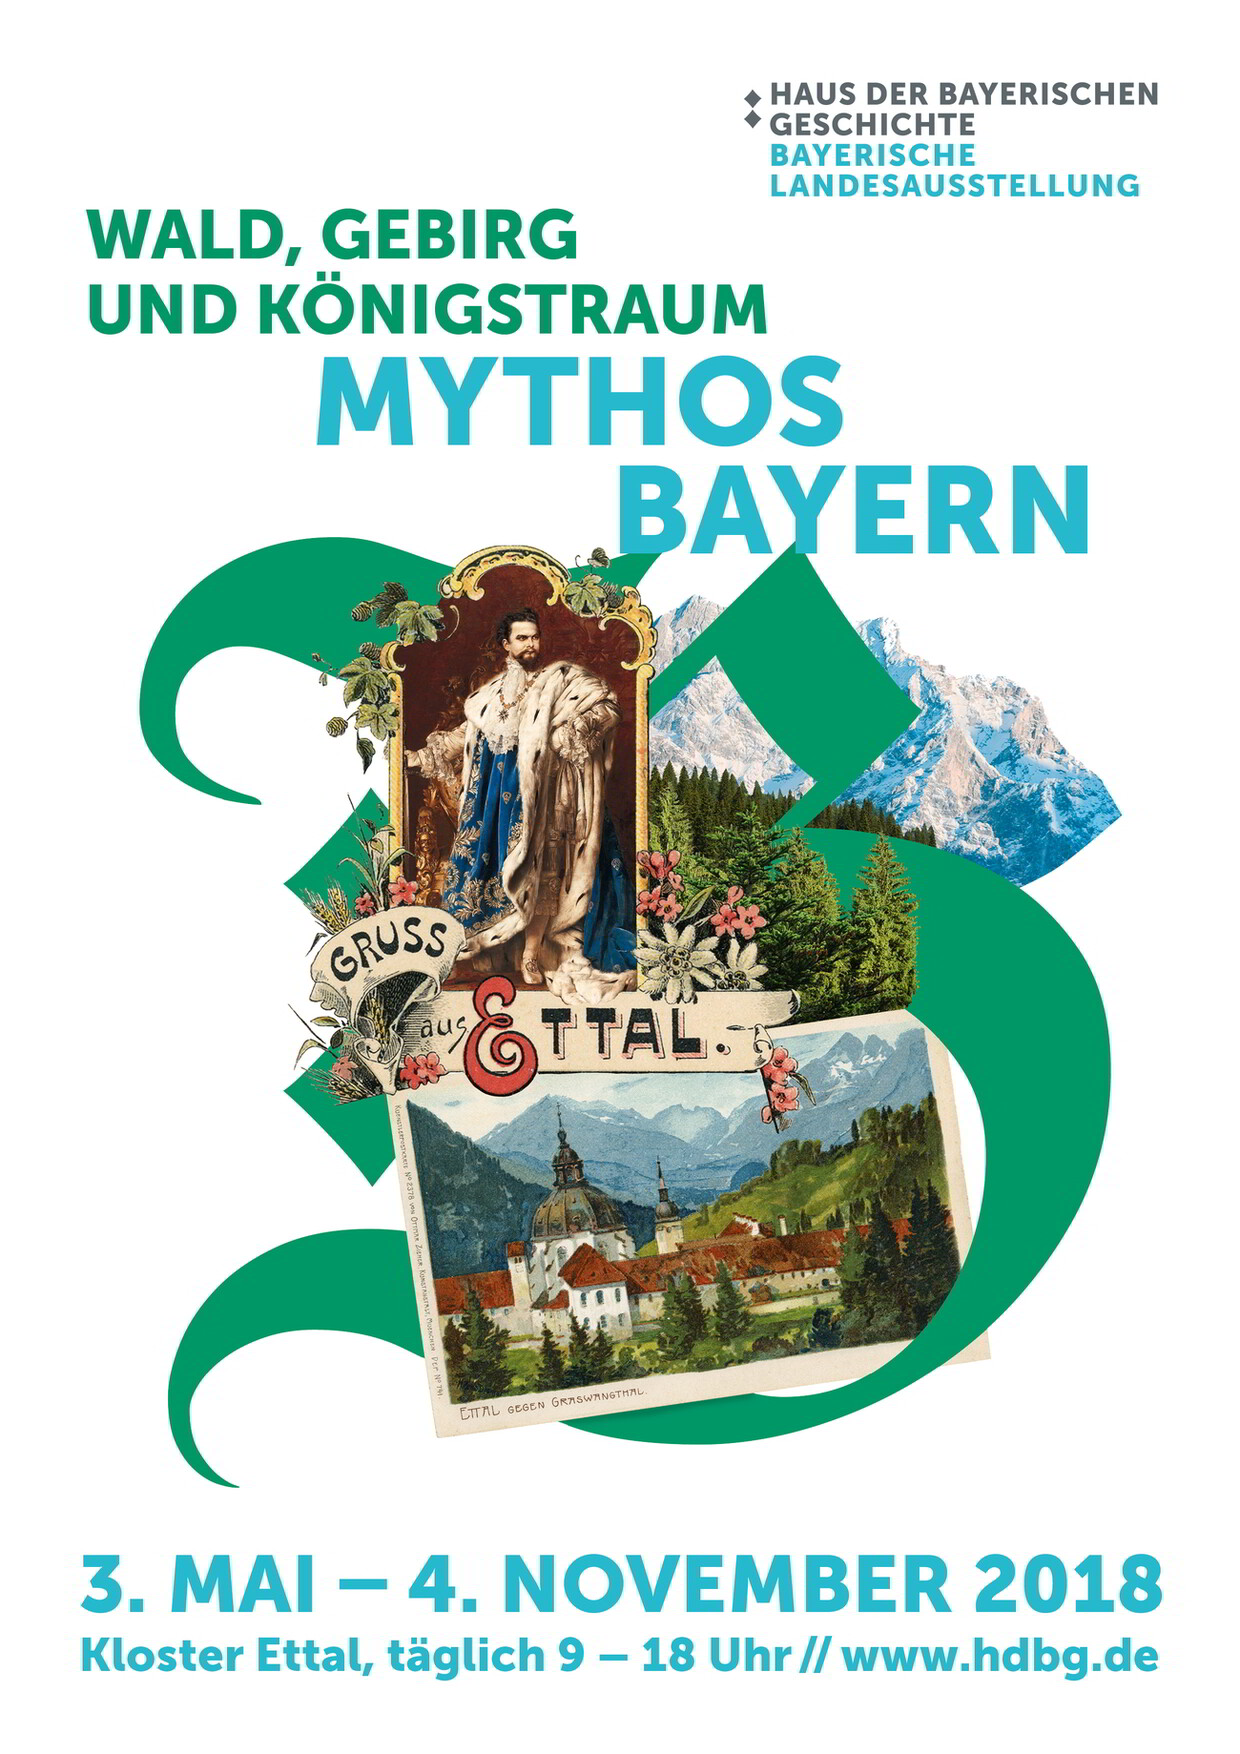 Plakatmotiv zur Bayerischen Landesausstellung 2018 "Wald, Gebirg und Königstraum - Mythos Bayern". 